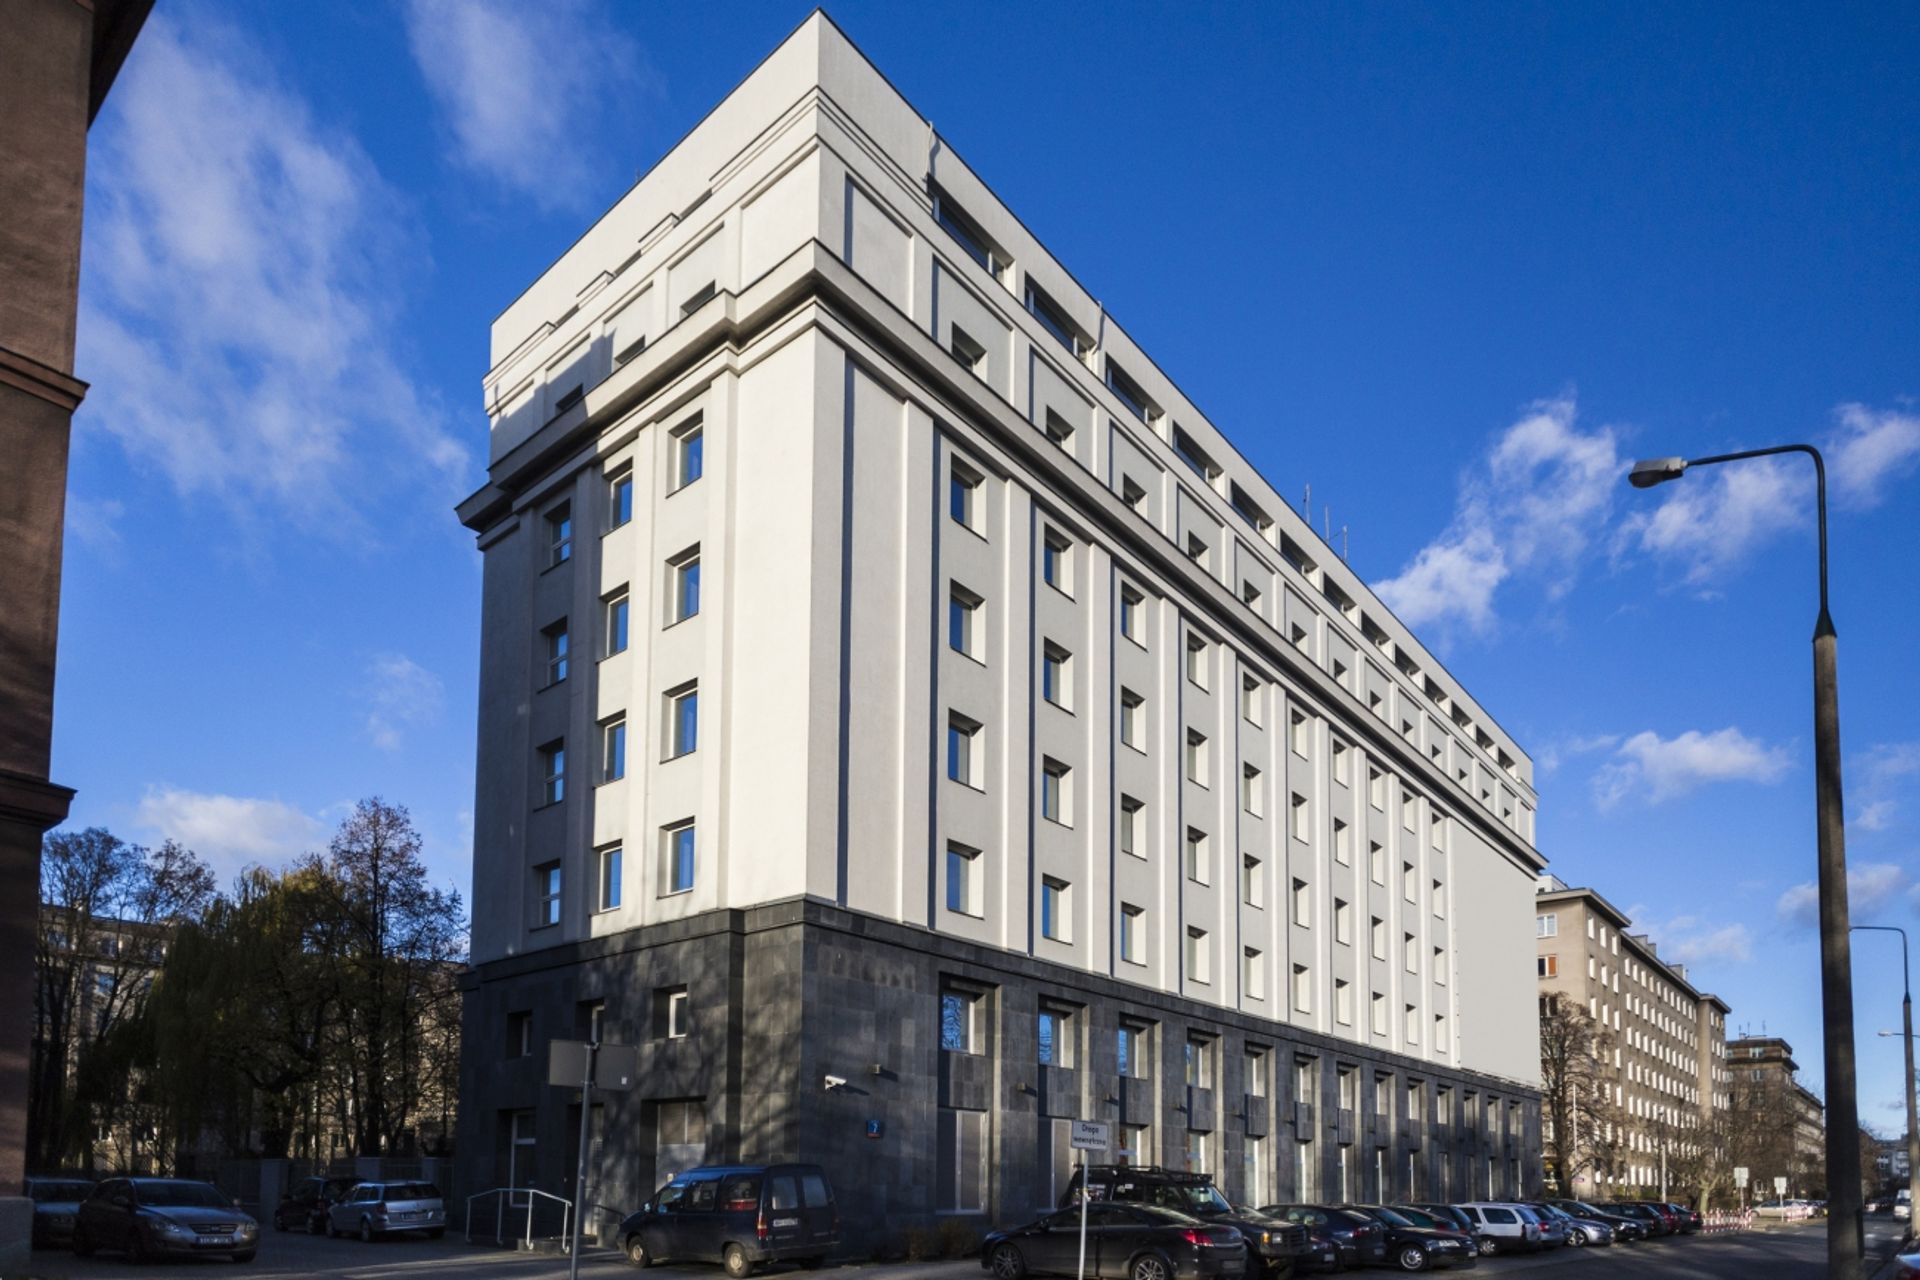  Sprzedaż biurowca Nova Praga w Warszawie przez UBS – budynek zmieni nazwę na Mazovia Plaza